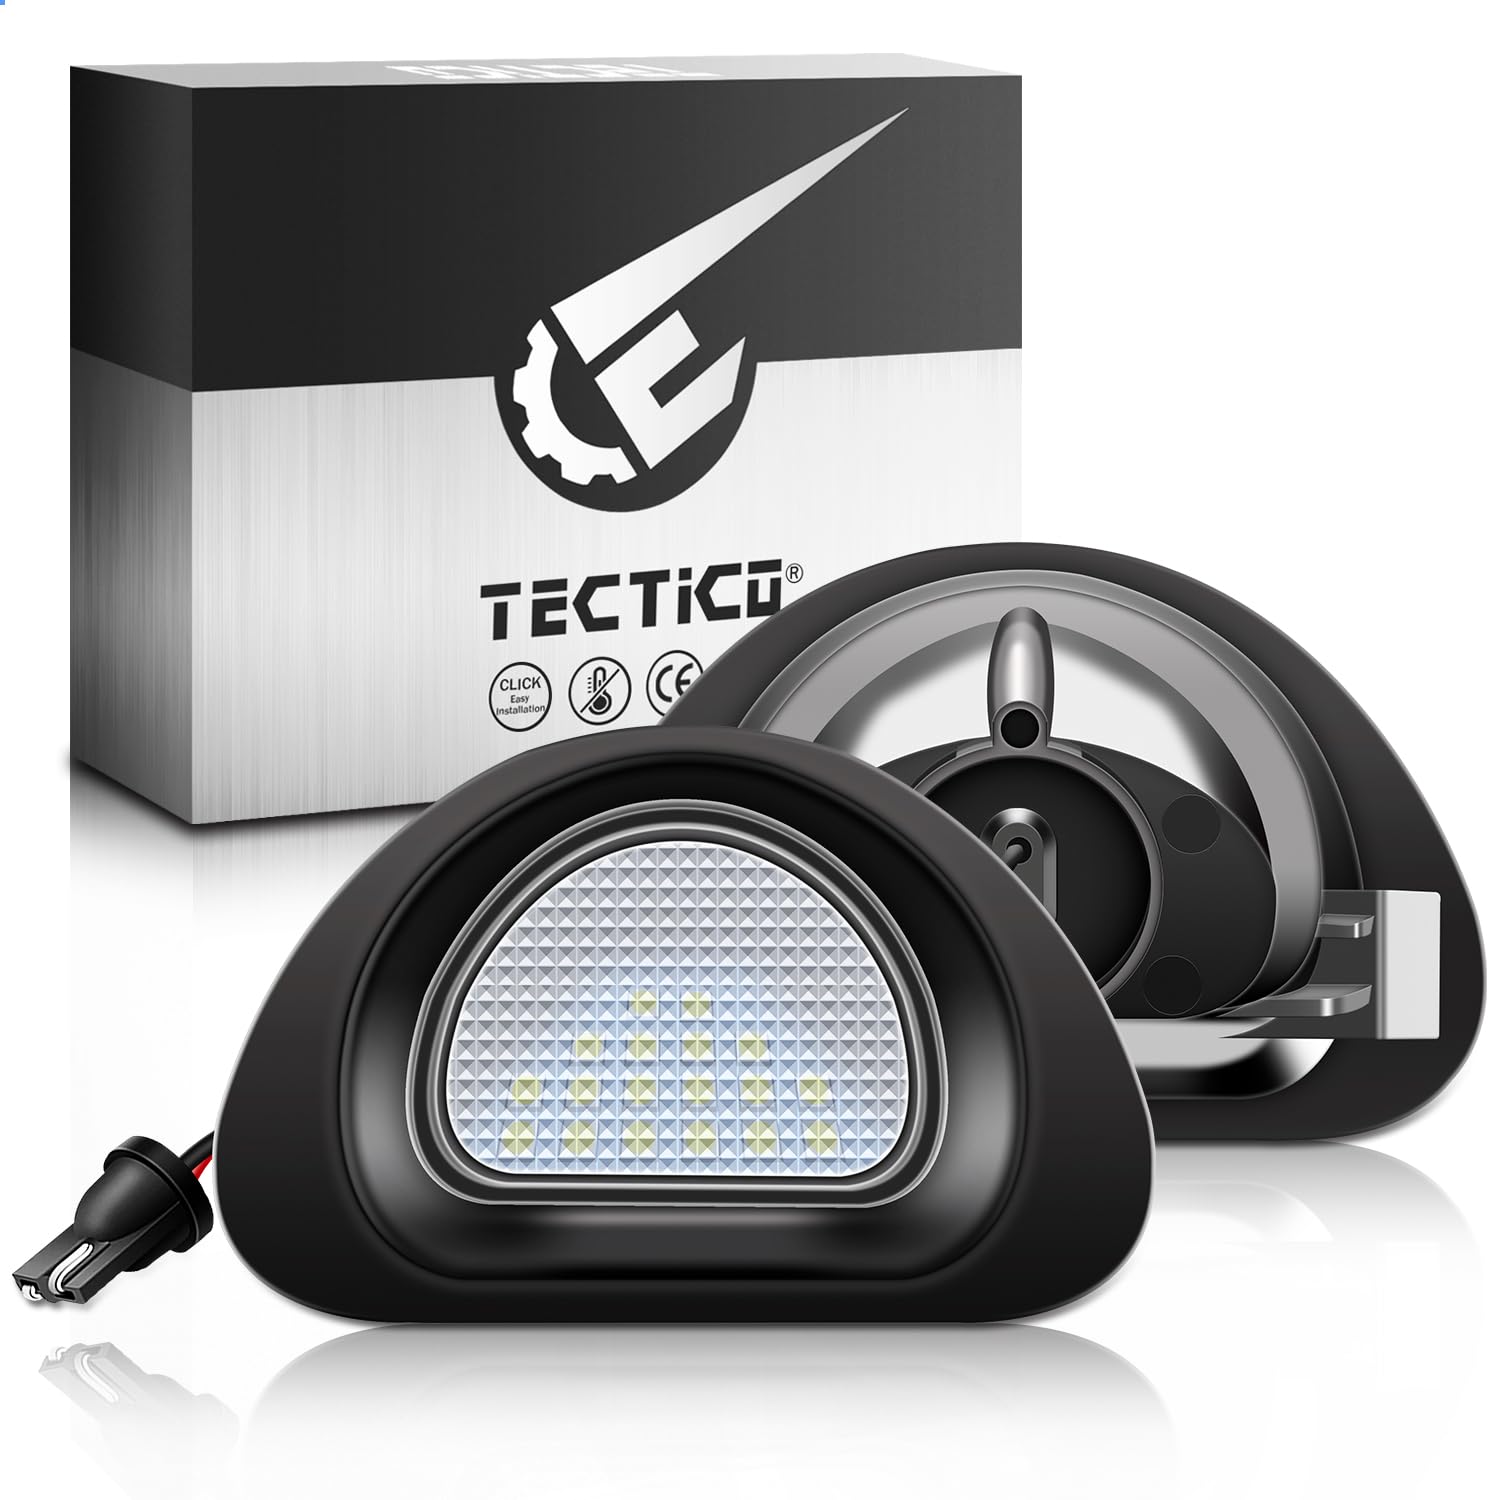 TECTICO LED Kennzeichenbeleuchtung Nummernschildbeleuchtung SMD Ultra Weiß Canbus Kompatible mit Citroen C1 Peugeot 107, 2 Stücke von TECTICO